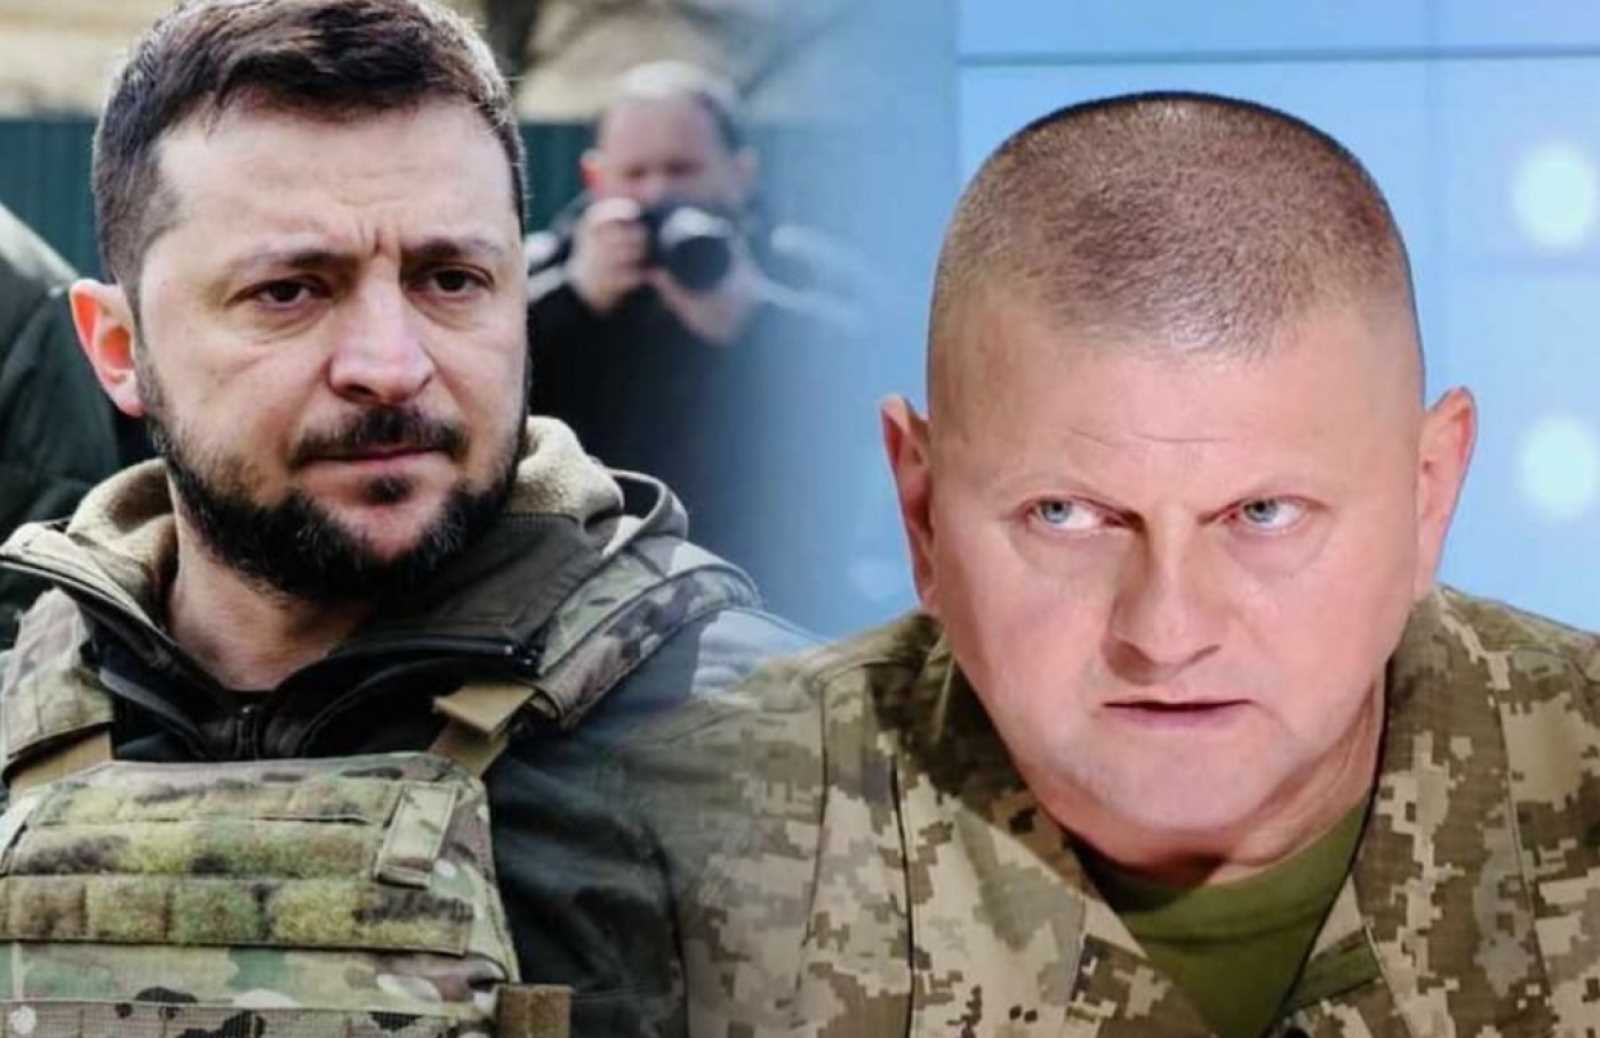 Căng thẳng, chia rẽ gia tăng ở Kiev giữa lúc Tổng thống Zelensky mâu thuẫn với tướng lĩnh Ukraine - Ảnh 1.